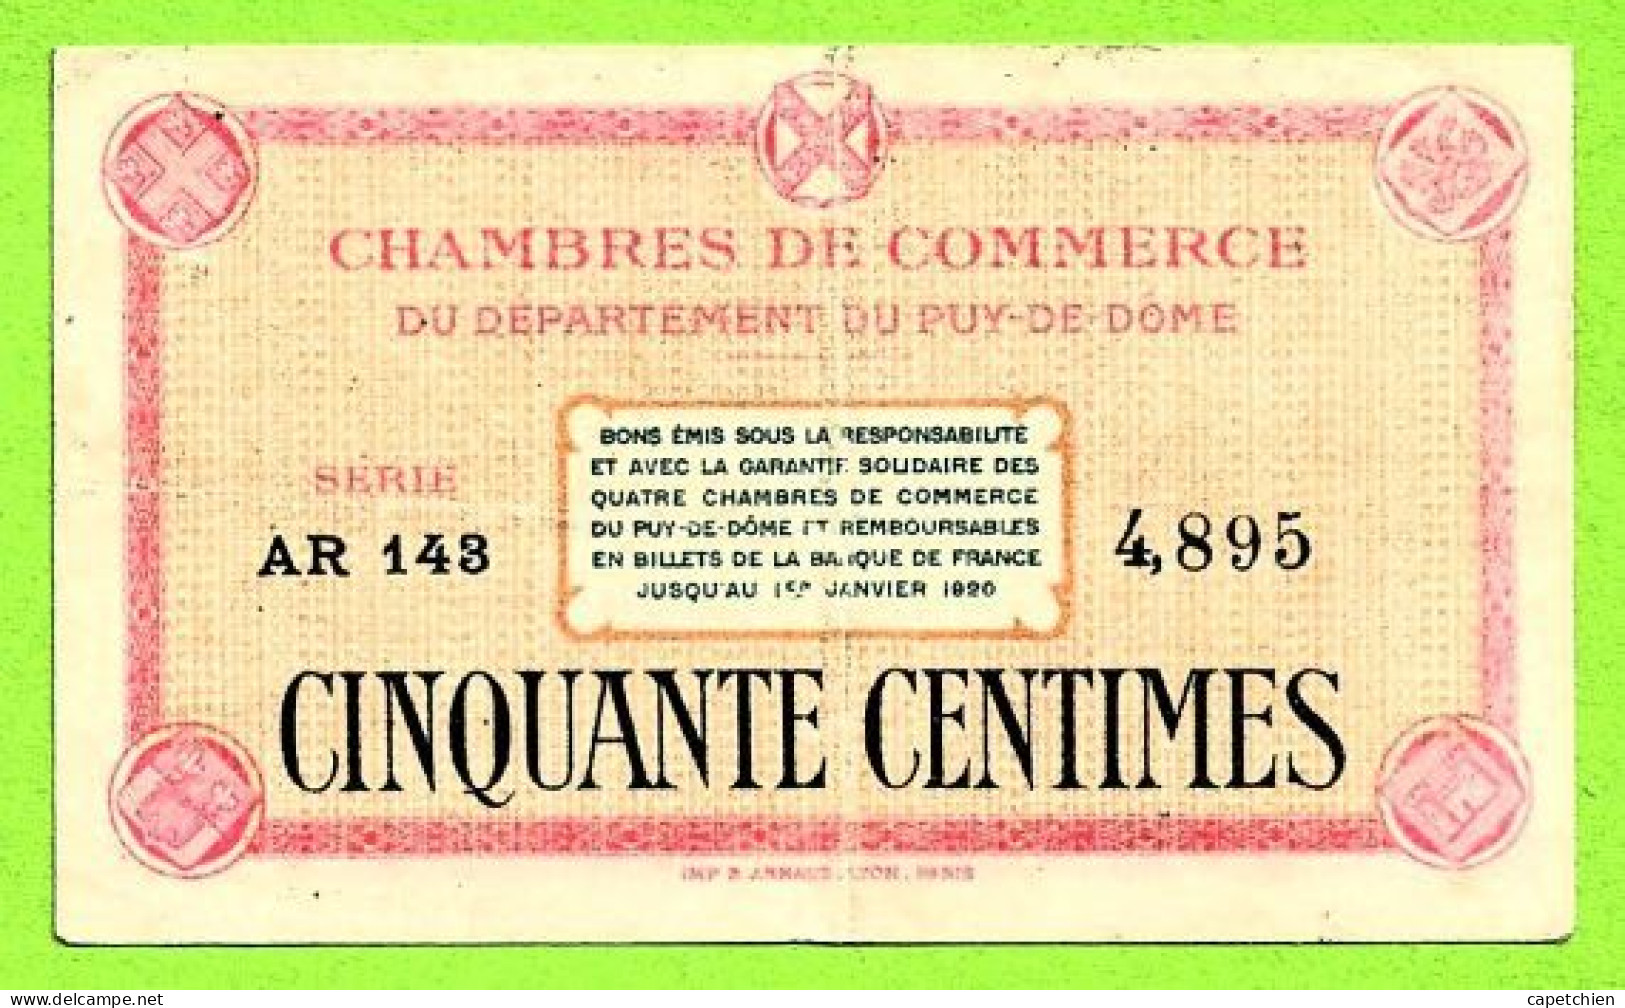 FRANCE / CHAMBRES De COMMERCE Du DEPARTEMENT Du PUY De DÔME / 50 CENT. / N° 4,895 / SERIE AR 143 - Chamber Of Commerce